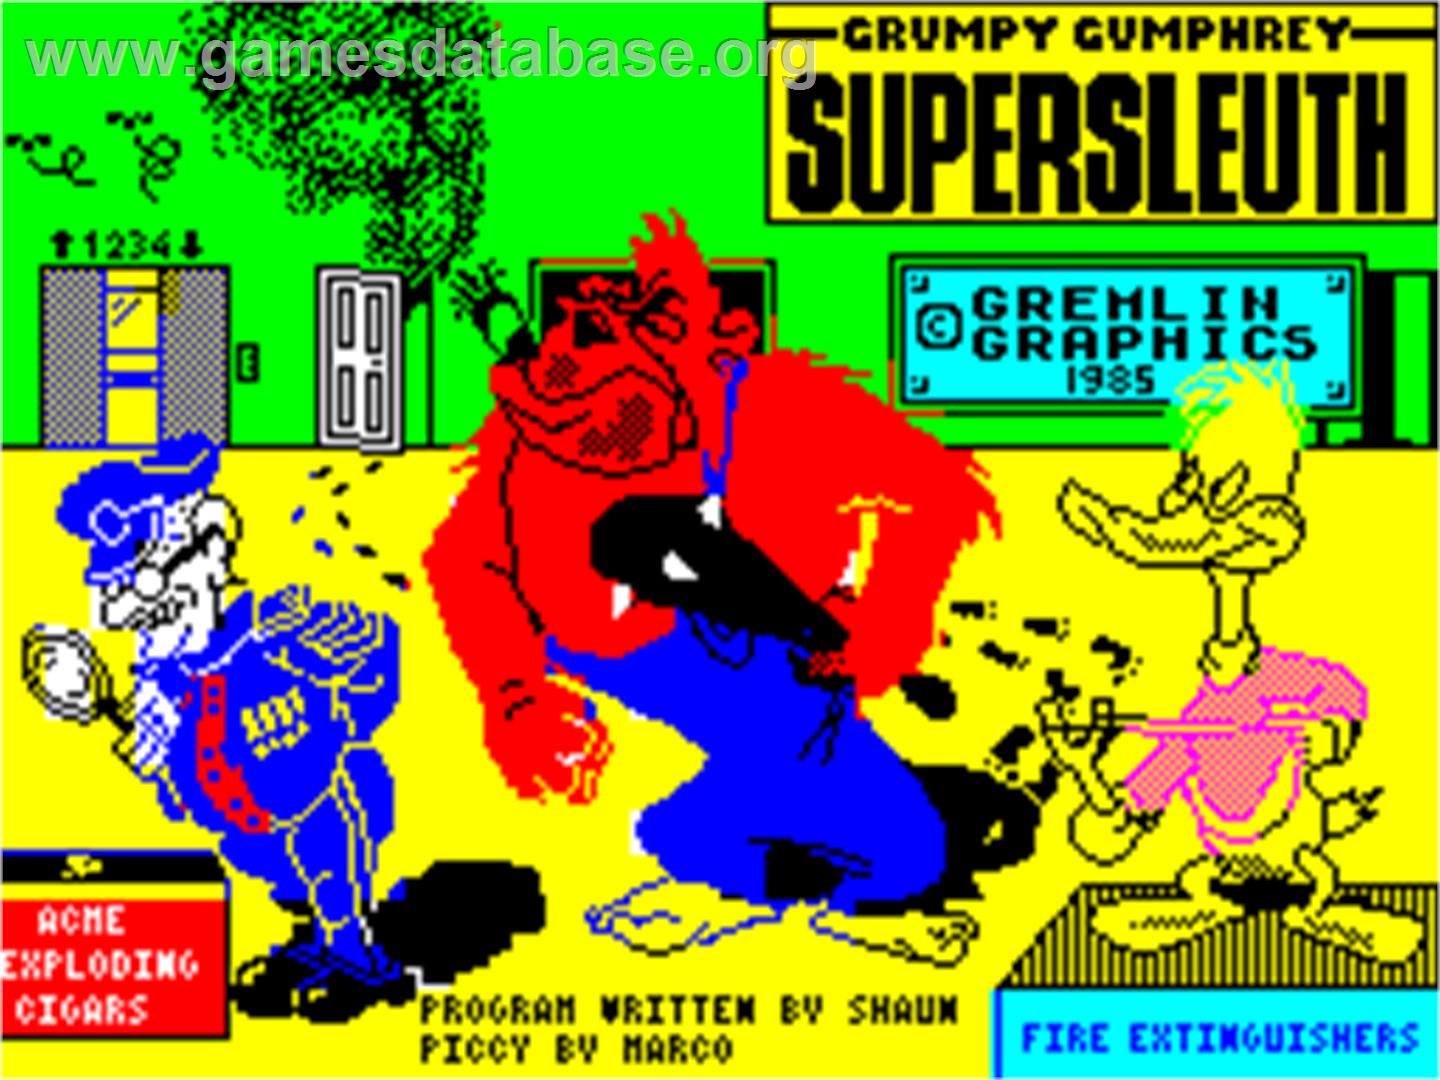 Grumpy Gumphrey Supersleuth - Sinclair ZX Spectrum - Artwork - Title Screen